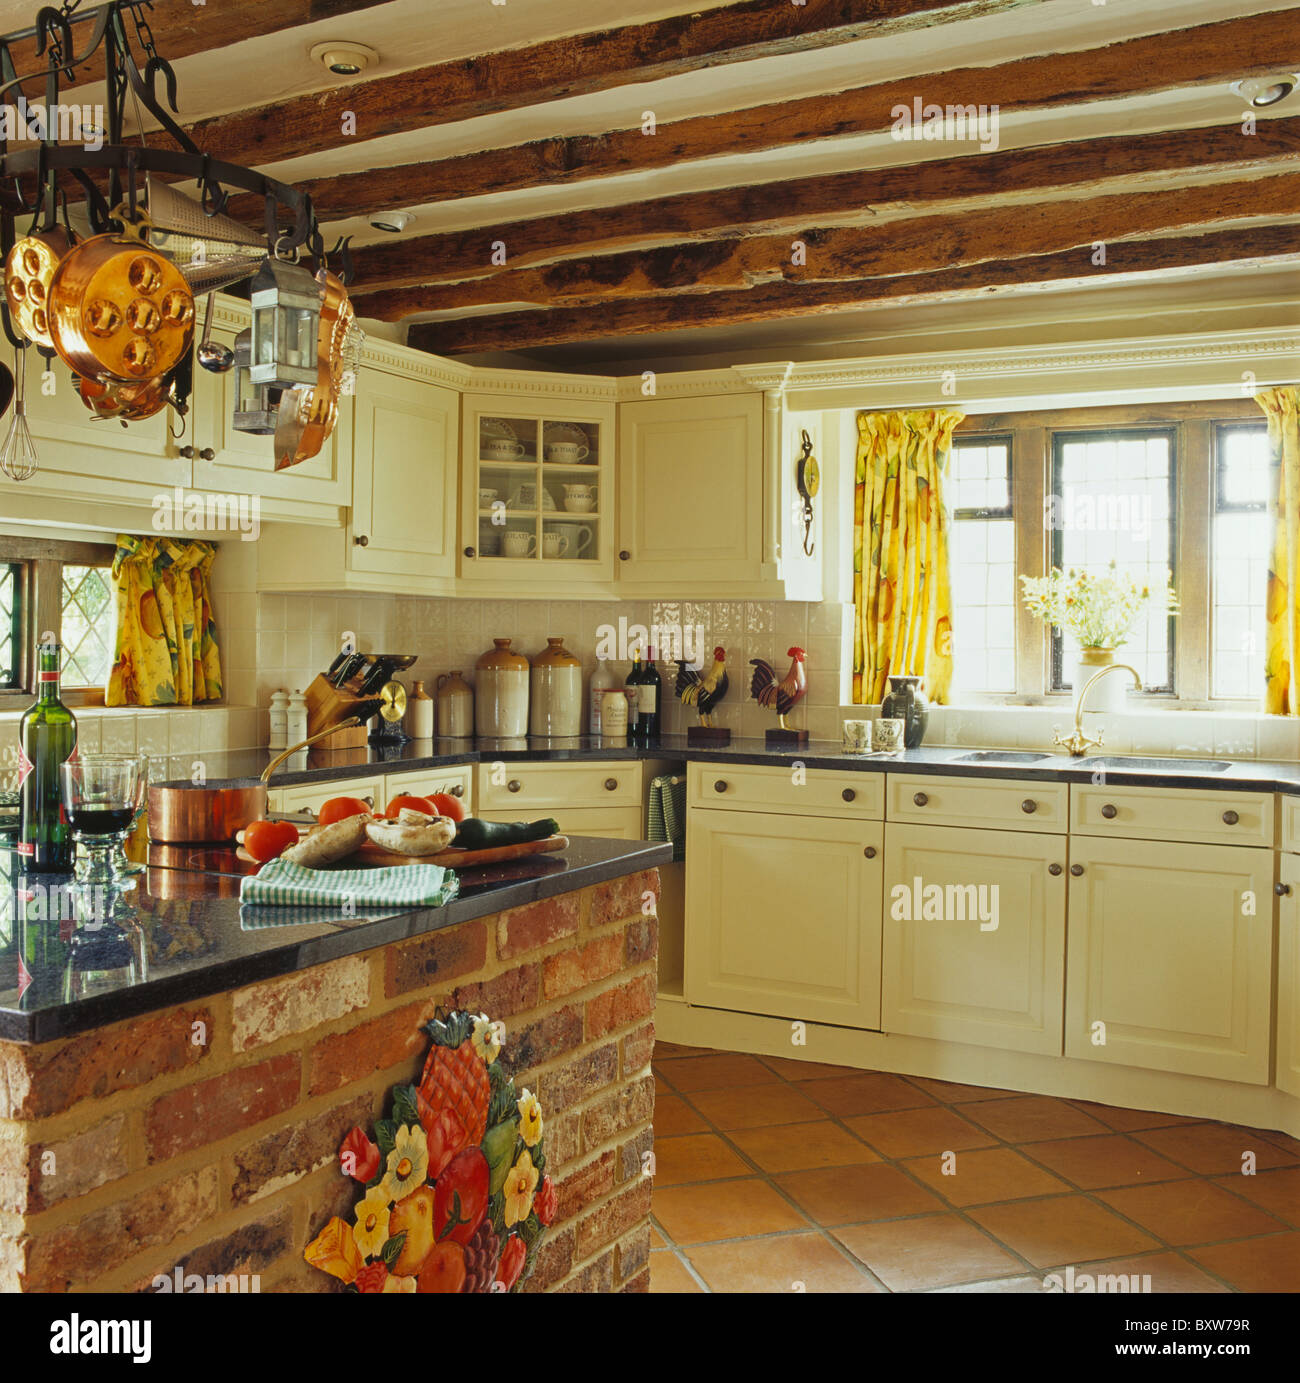 https://c8.alamy.com/comp/BXW79R/granite-worktop-on-brick-island-unit-in-cream-cottage-kitchen-with-BXW79R.jpg